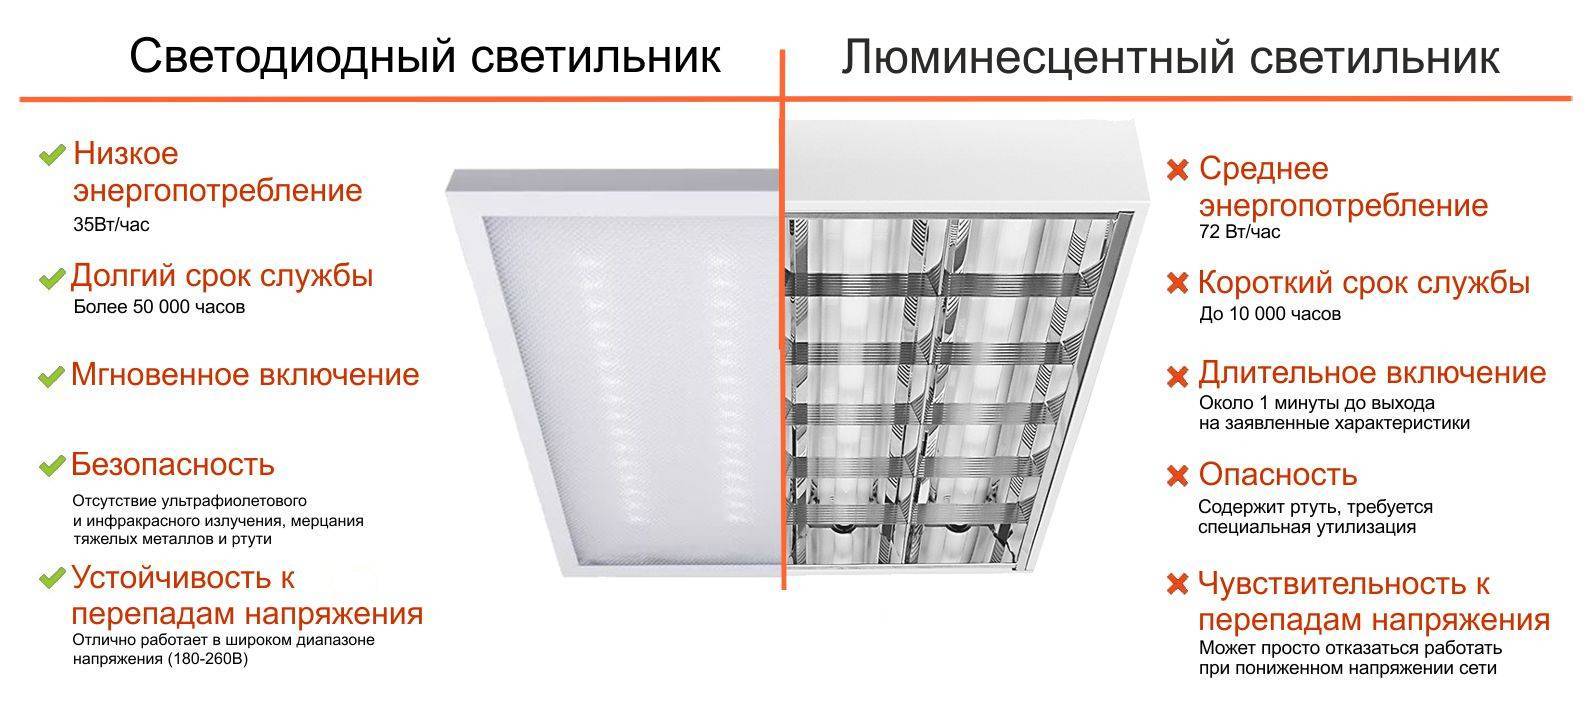 Светодиодные светильники в системе аварийного освещения